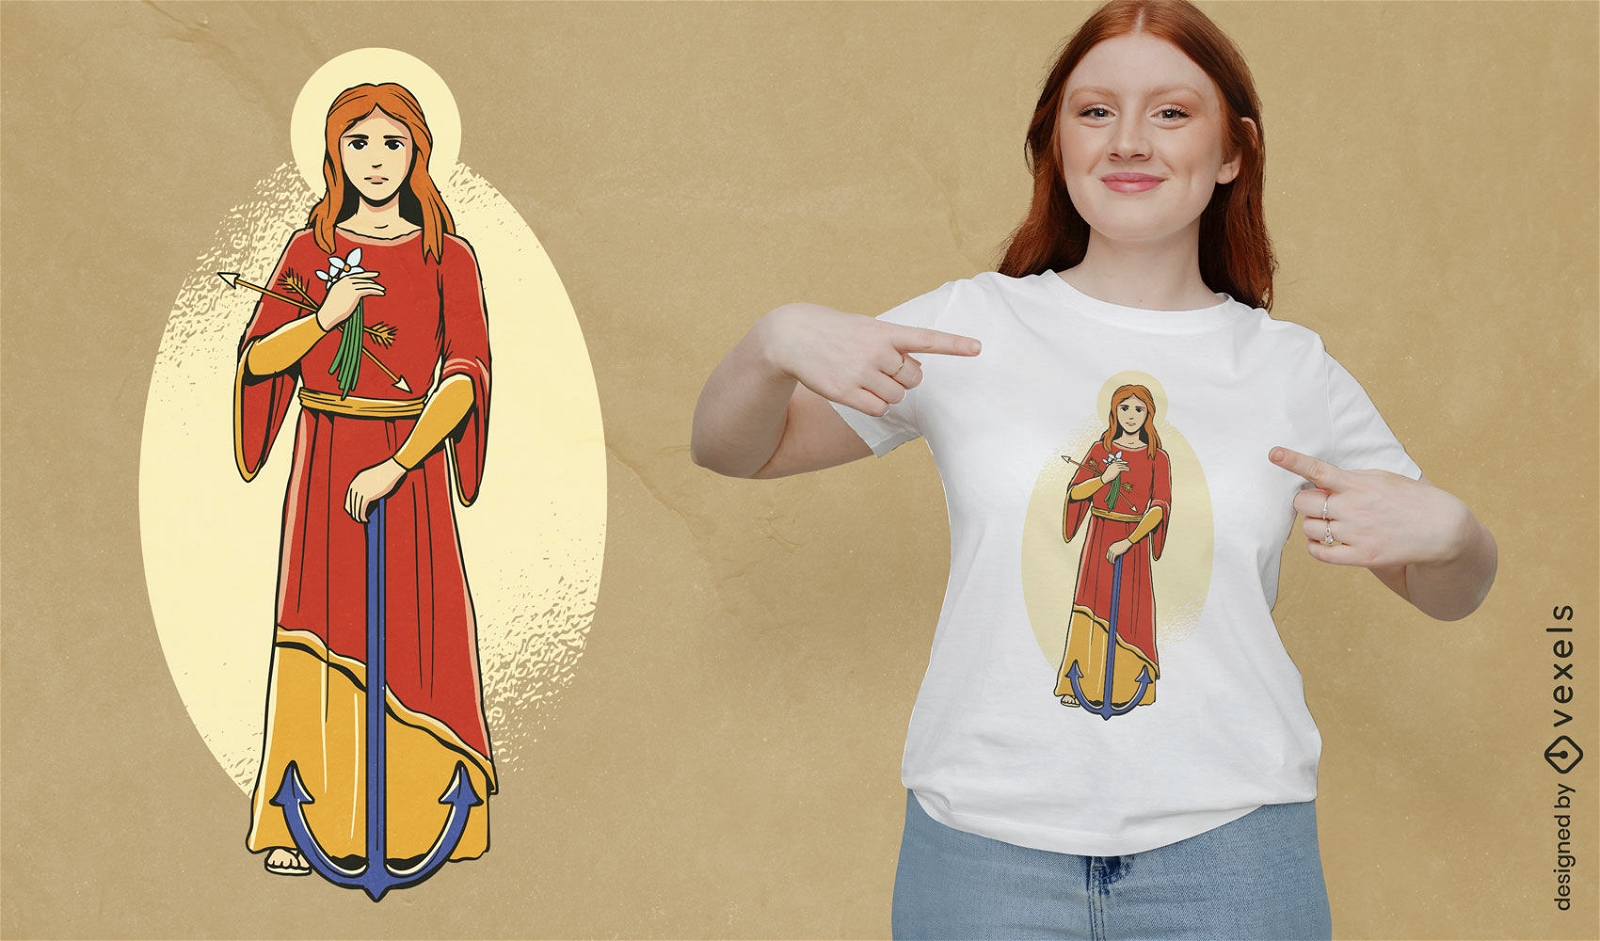 Diseño de camiseta de mujer santa joven.